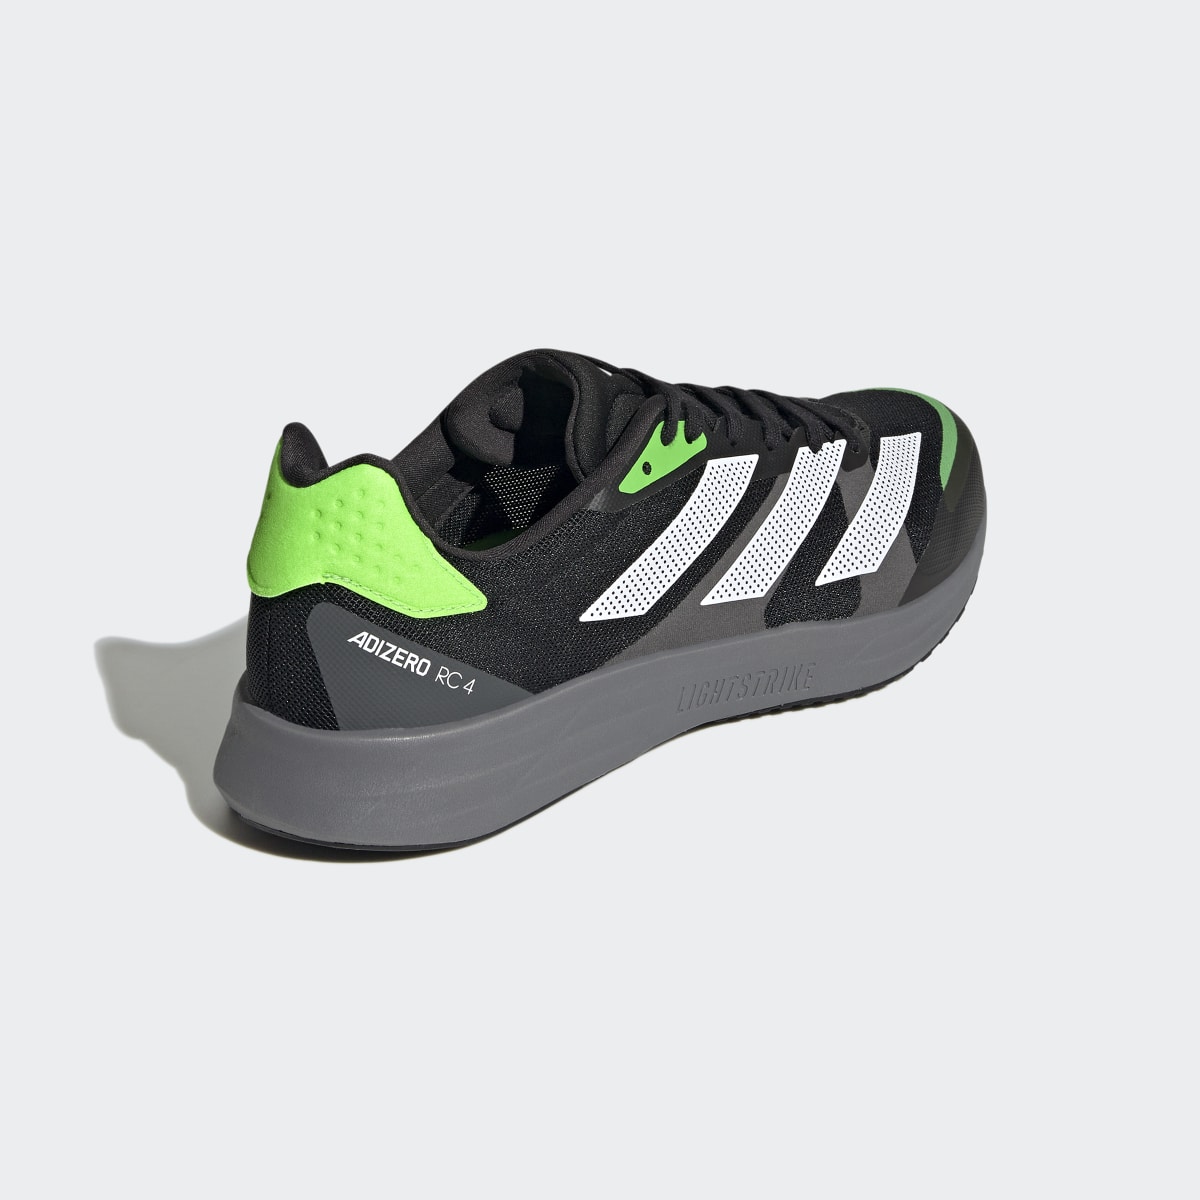 Adidas Adizero RC 4 Shoes. 6